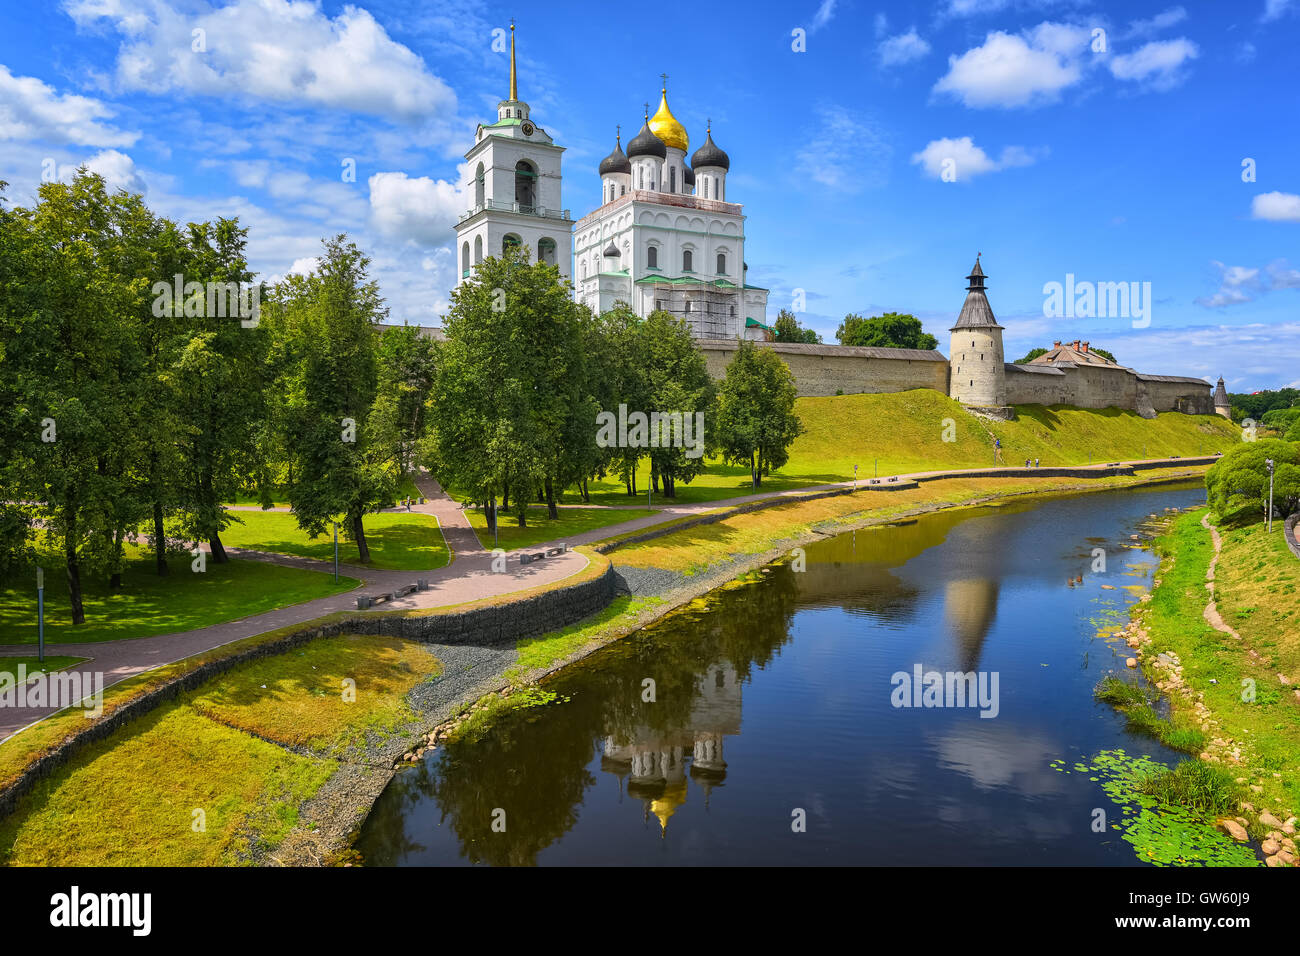 Der Wachturm, die Wände und die goldene Kuppel der Trinity Church in der Pskower Kreml Reflexion in einem Fluss, Pskow, Russland Stockfoto